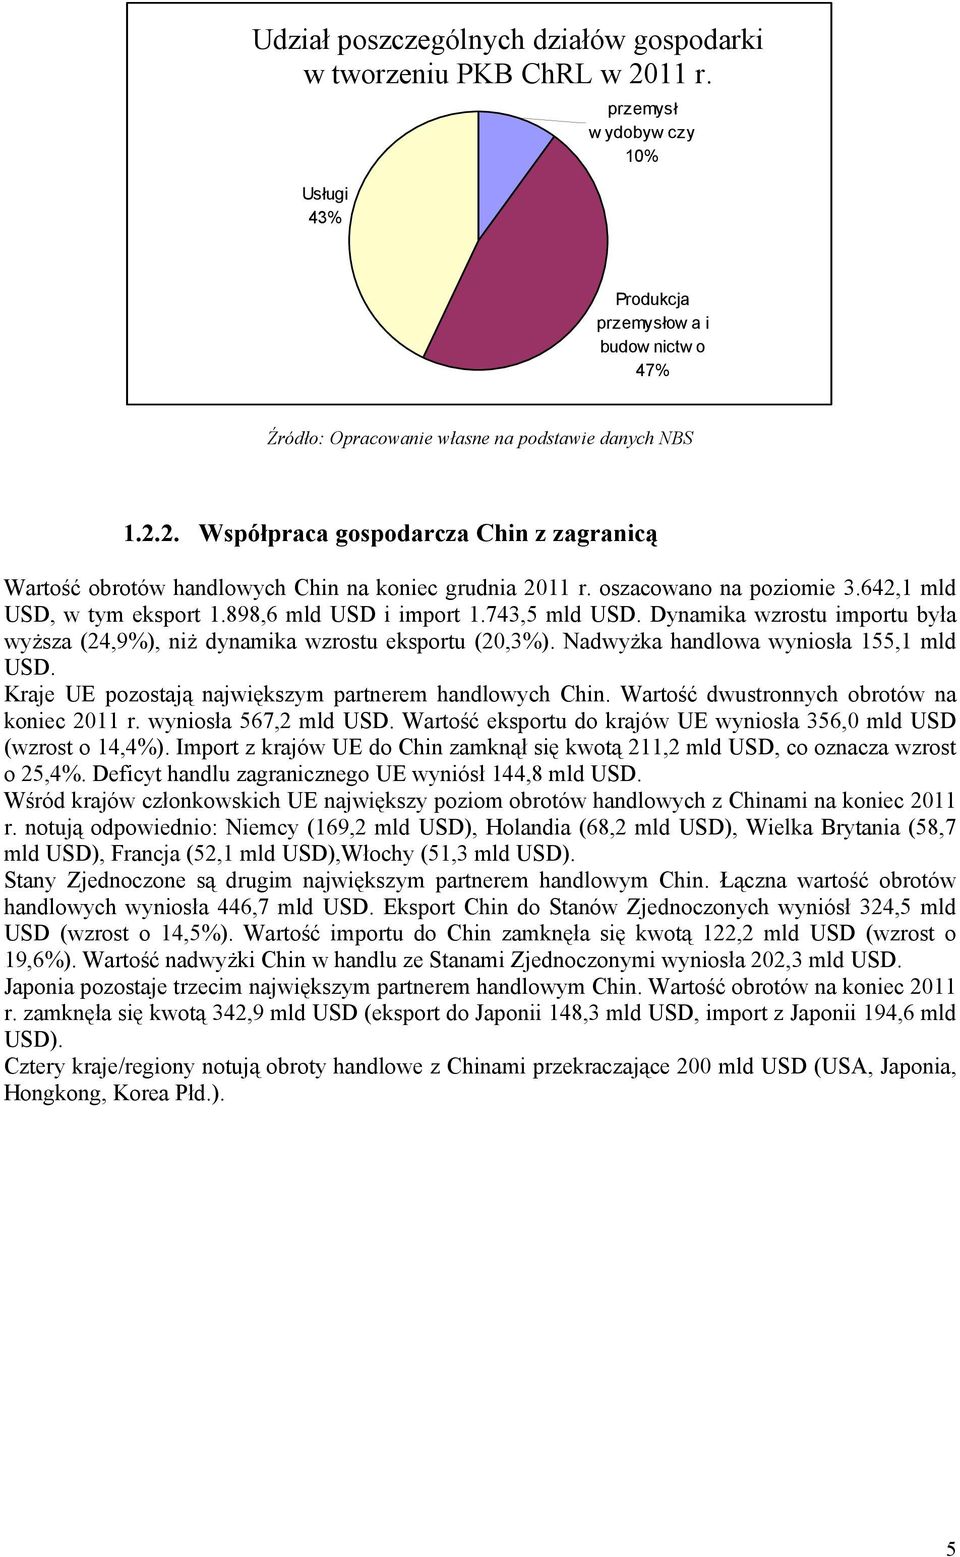 2. Współpraca gospodarcza Chin z zagranicą Wartość obrotów handlowych Chin na koniec grudnia 2011 r. oszacowano na poziomie 3.642,1 mld USD, w tym eksport 1.898,6 mld USD i import 1.743,5 mld USD.